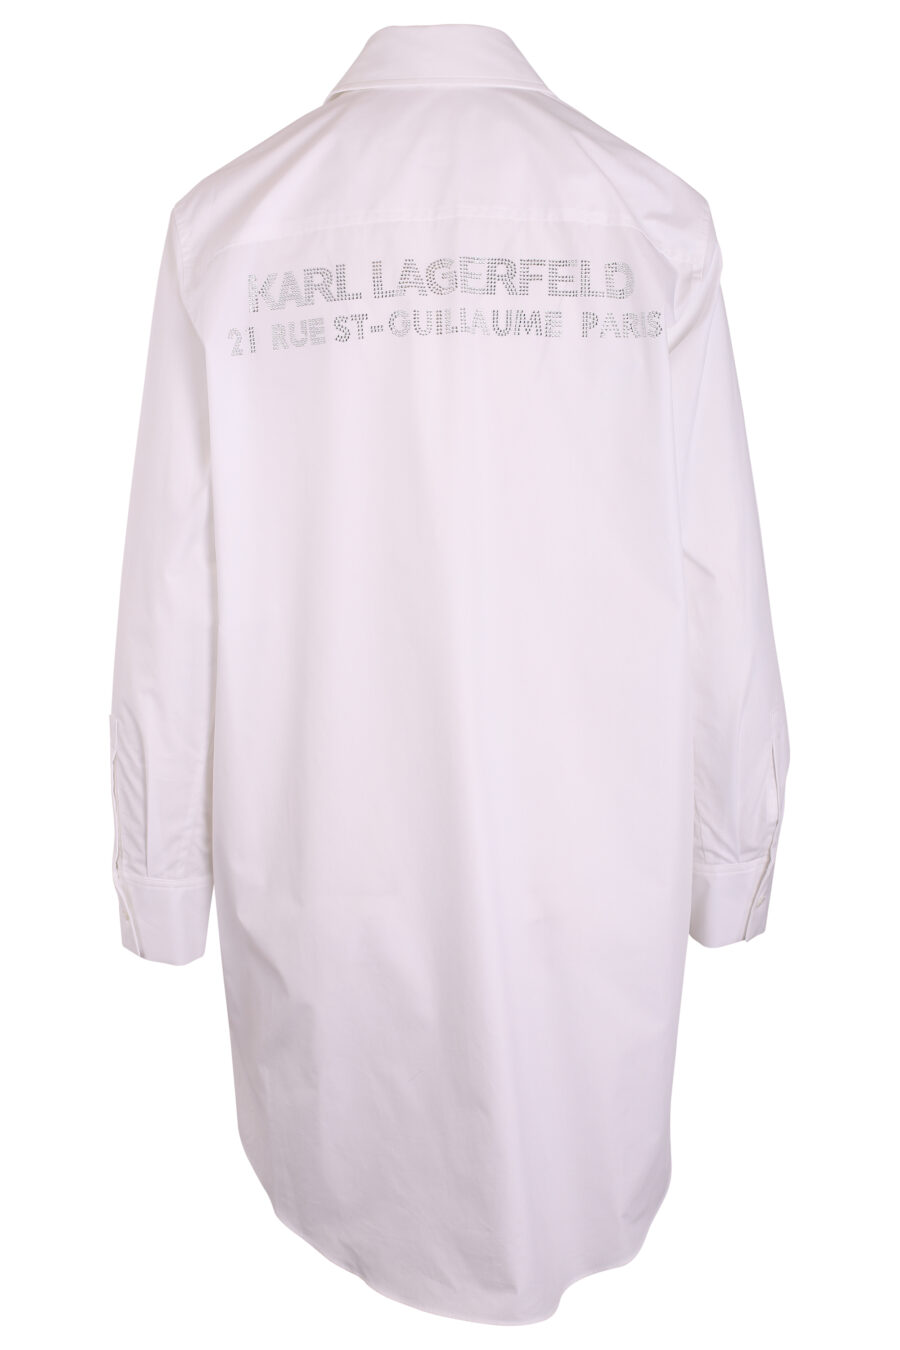 Langes weißes Hemd mit Strass-Logo - IMG 3424